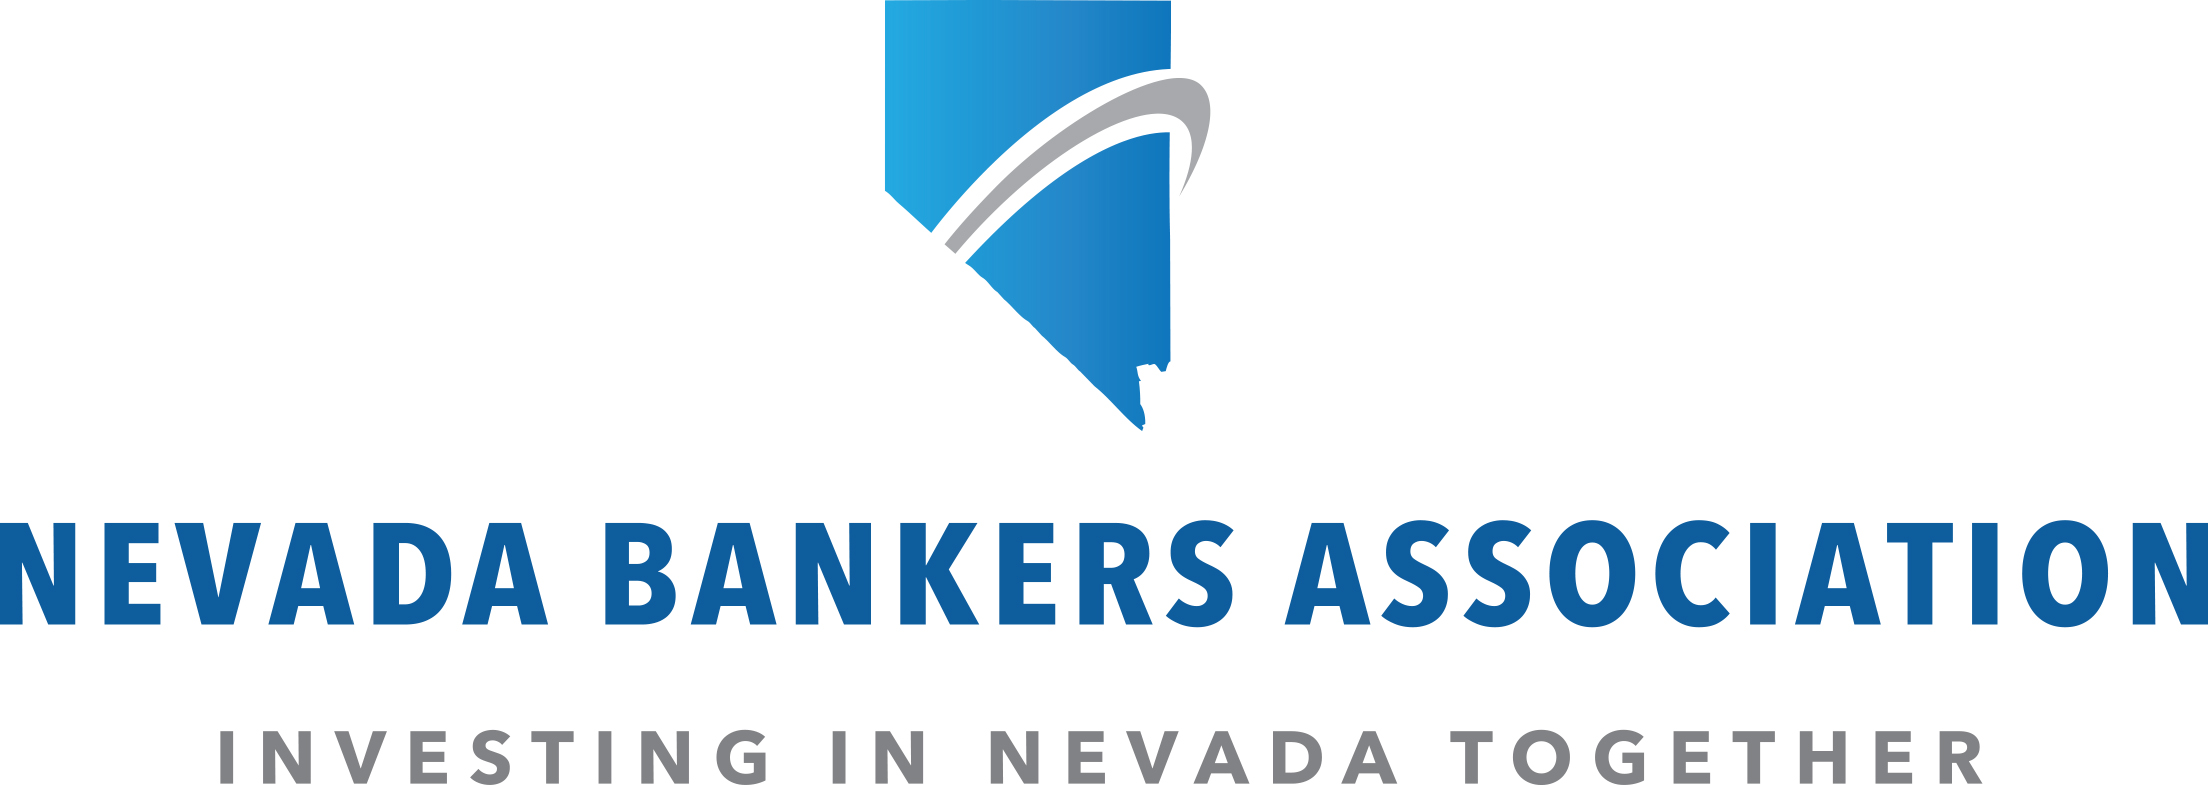 NV Bankers Association Logo FINAL